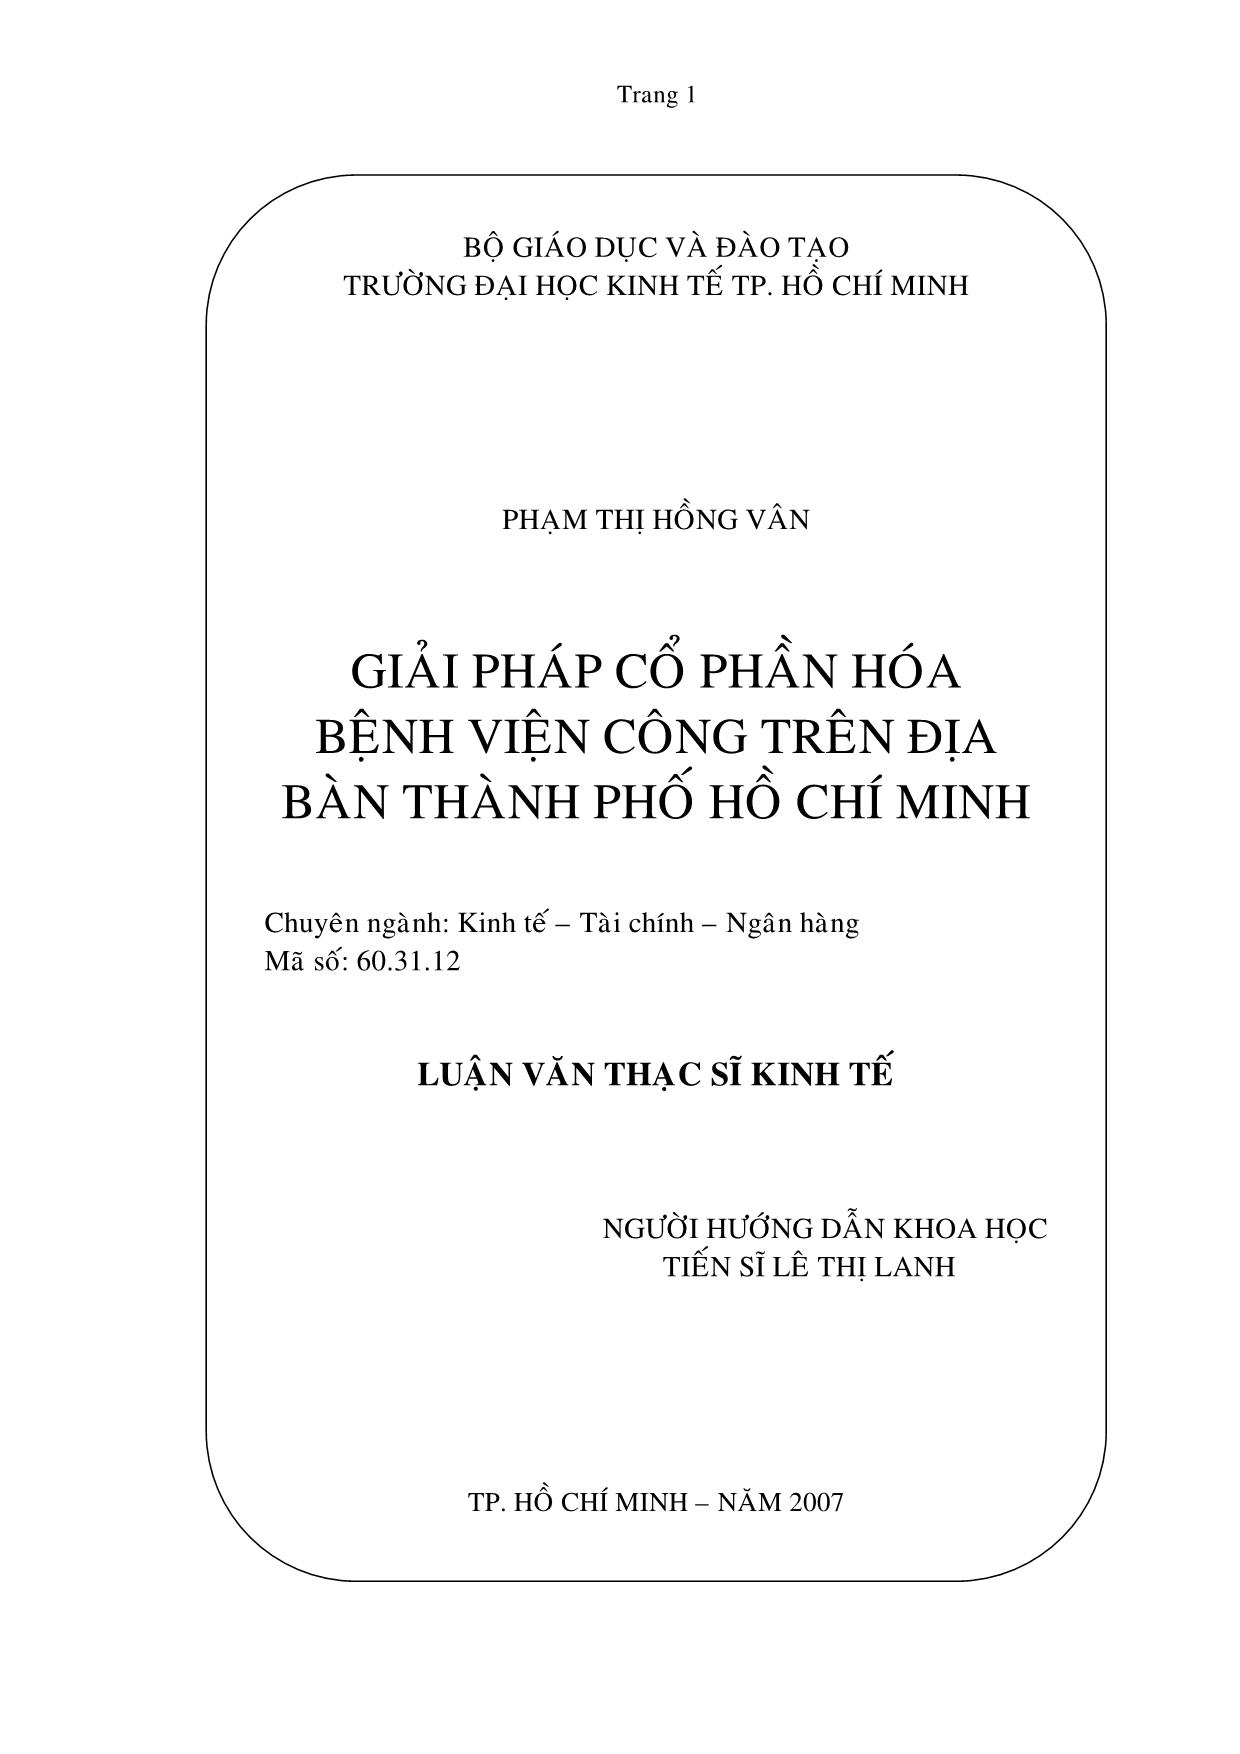 Luận văn Giải pháp cổ phần hóa bệnh viện công trên địa bàn thành phố Hồ Chí Minh trang 1